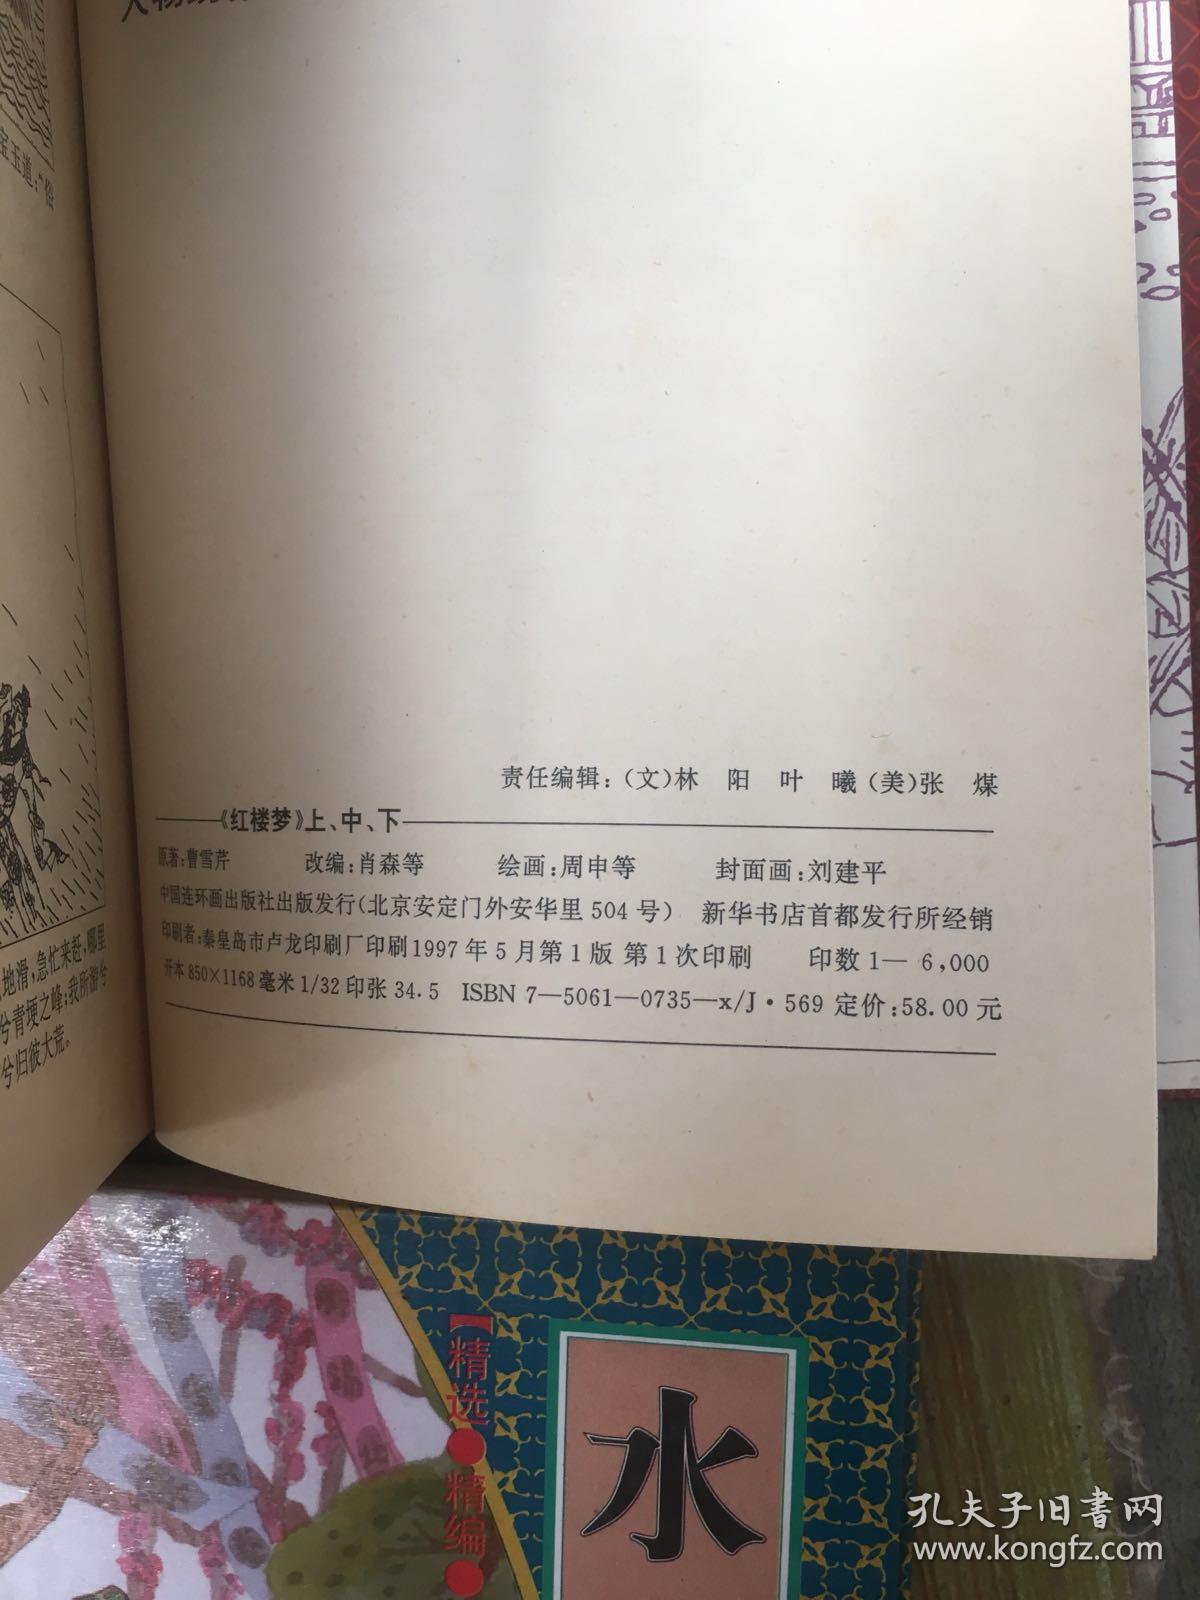 四大名著连环画(西游记，水浒传，三国演义，红楼梦)